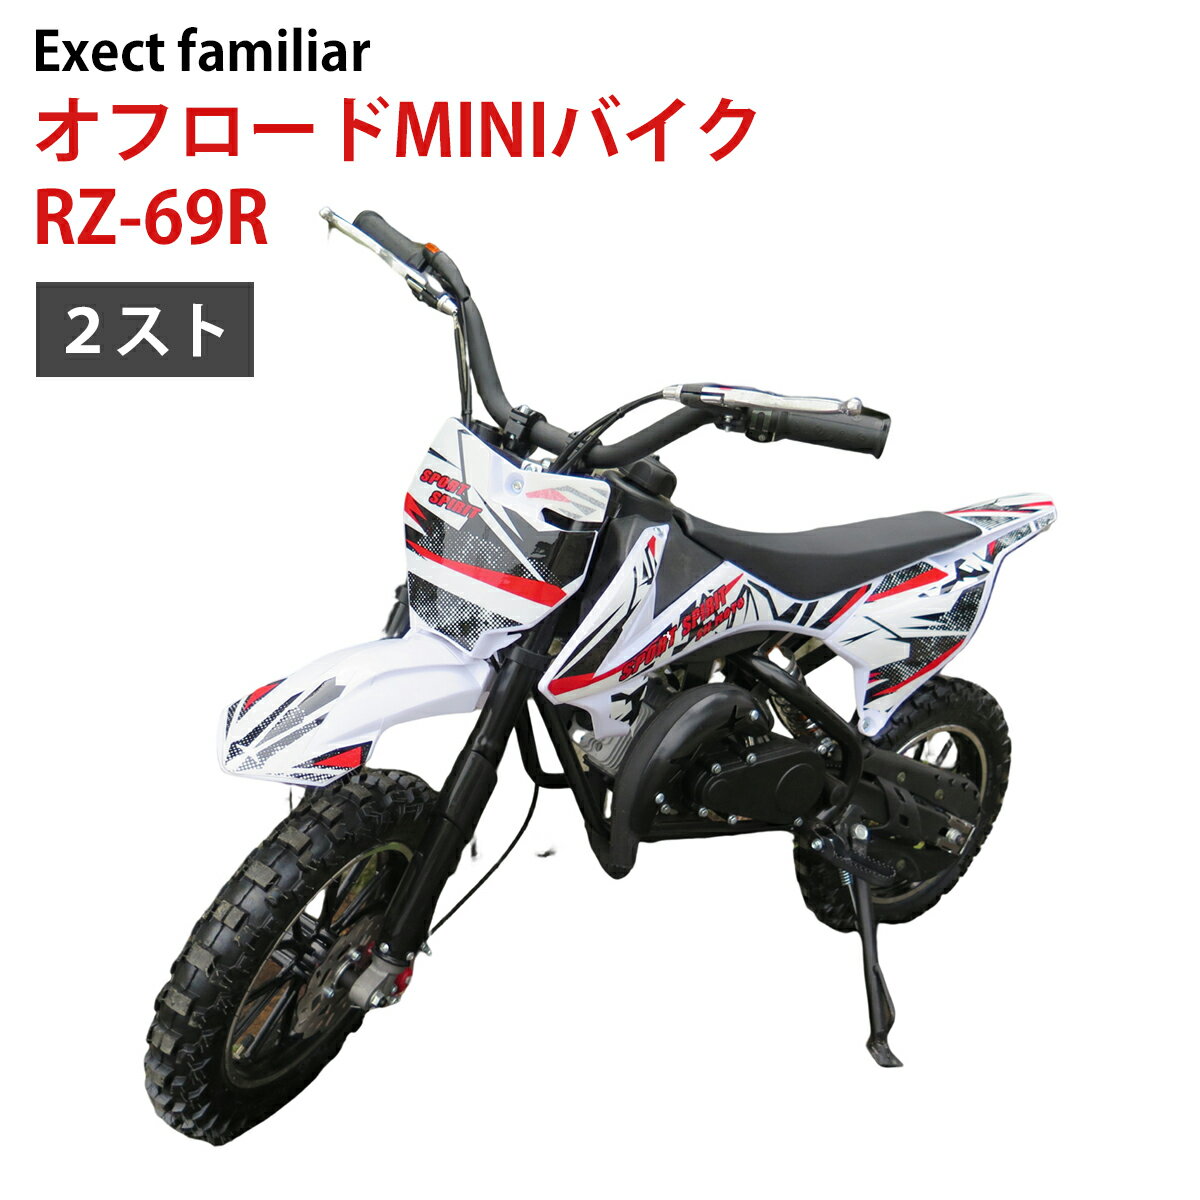 オフロード MINI バイク RZ-69R 50cc 2スト ポケバイ【アウトレット品】